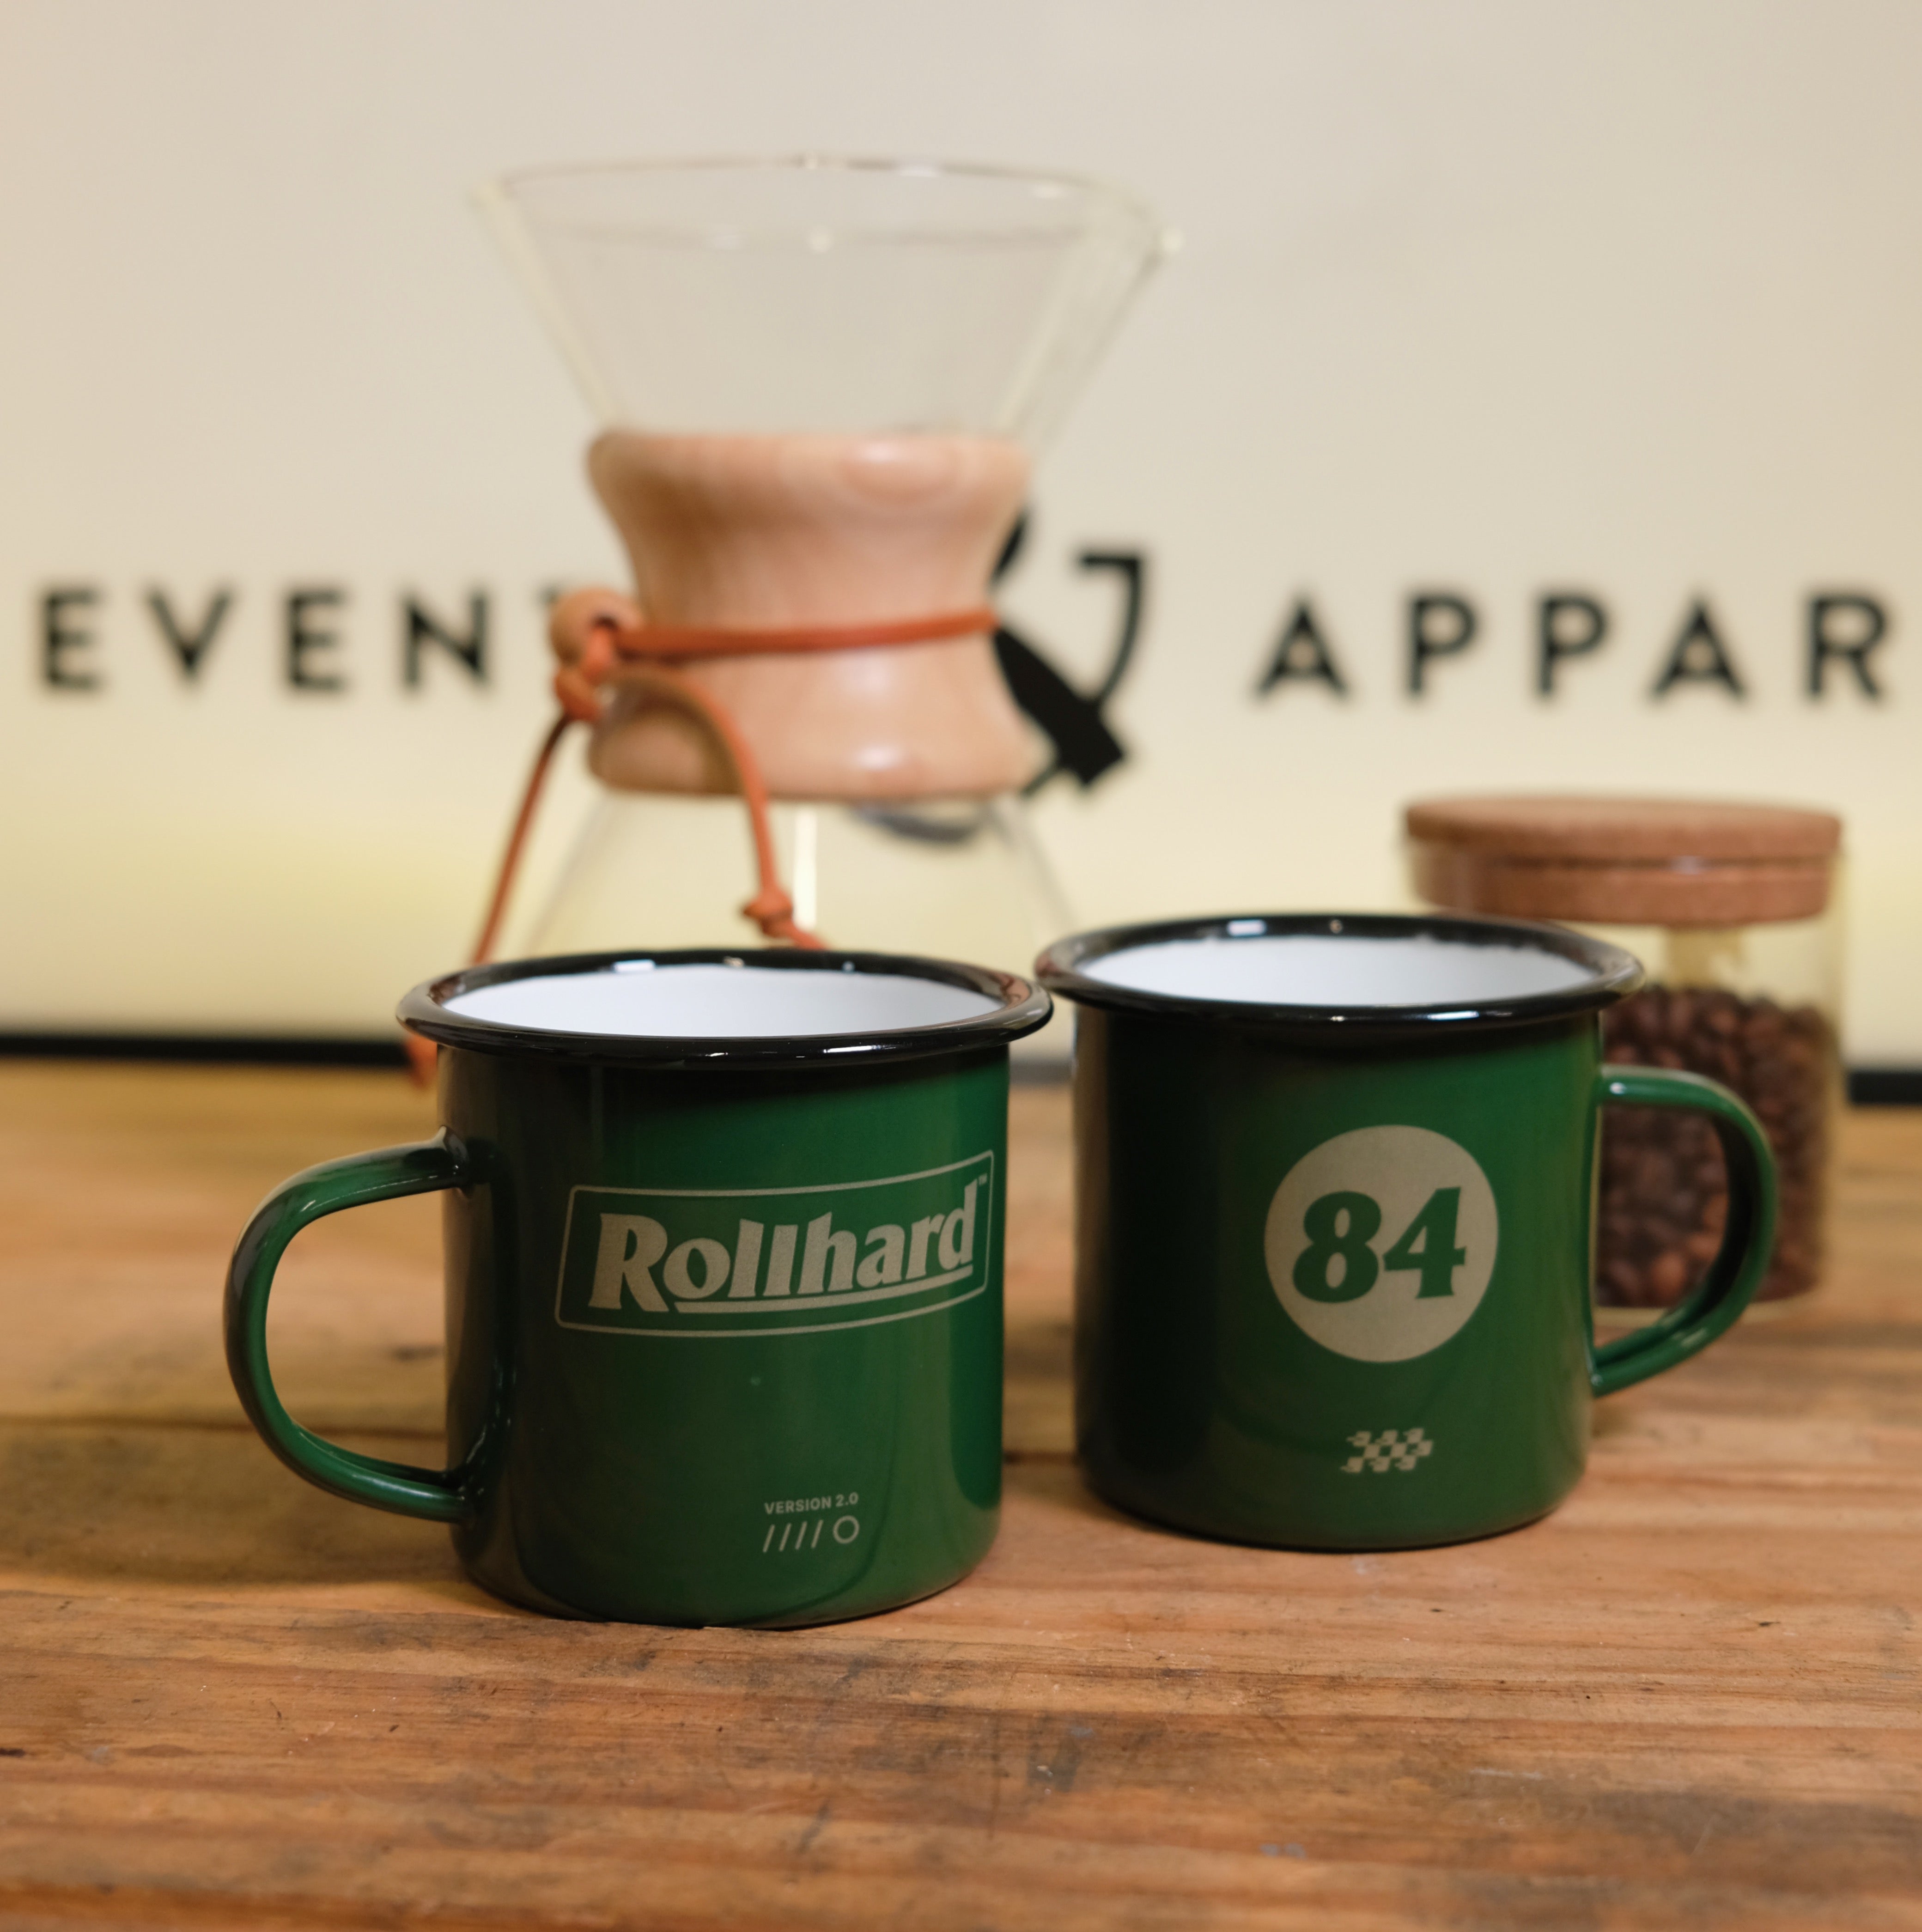 Essentials Enamel Coffee Mug - Green